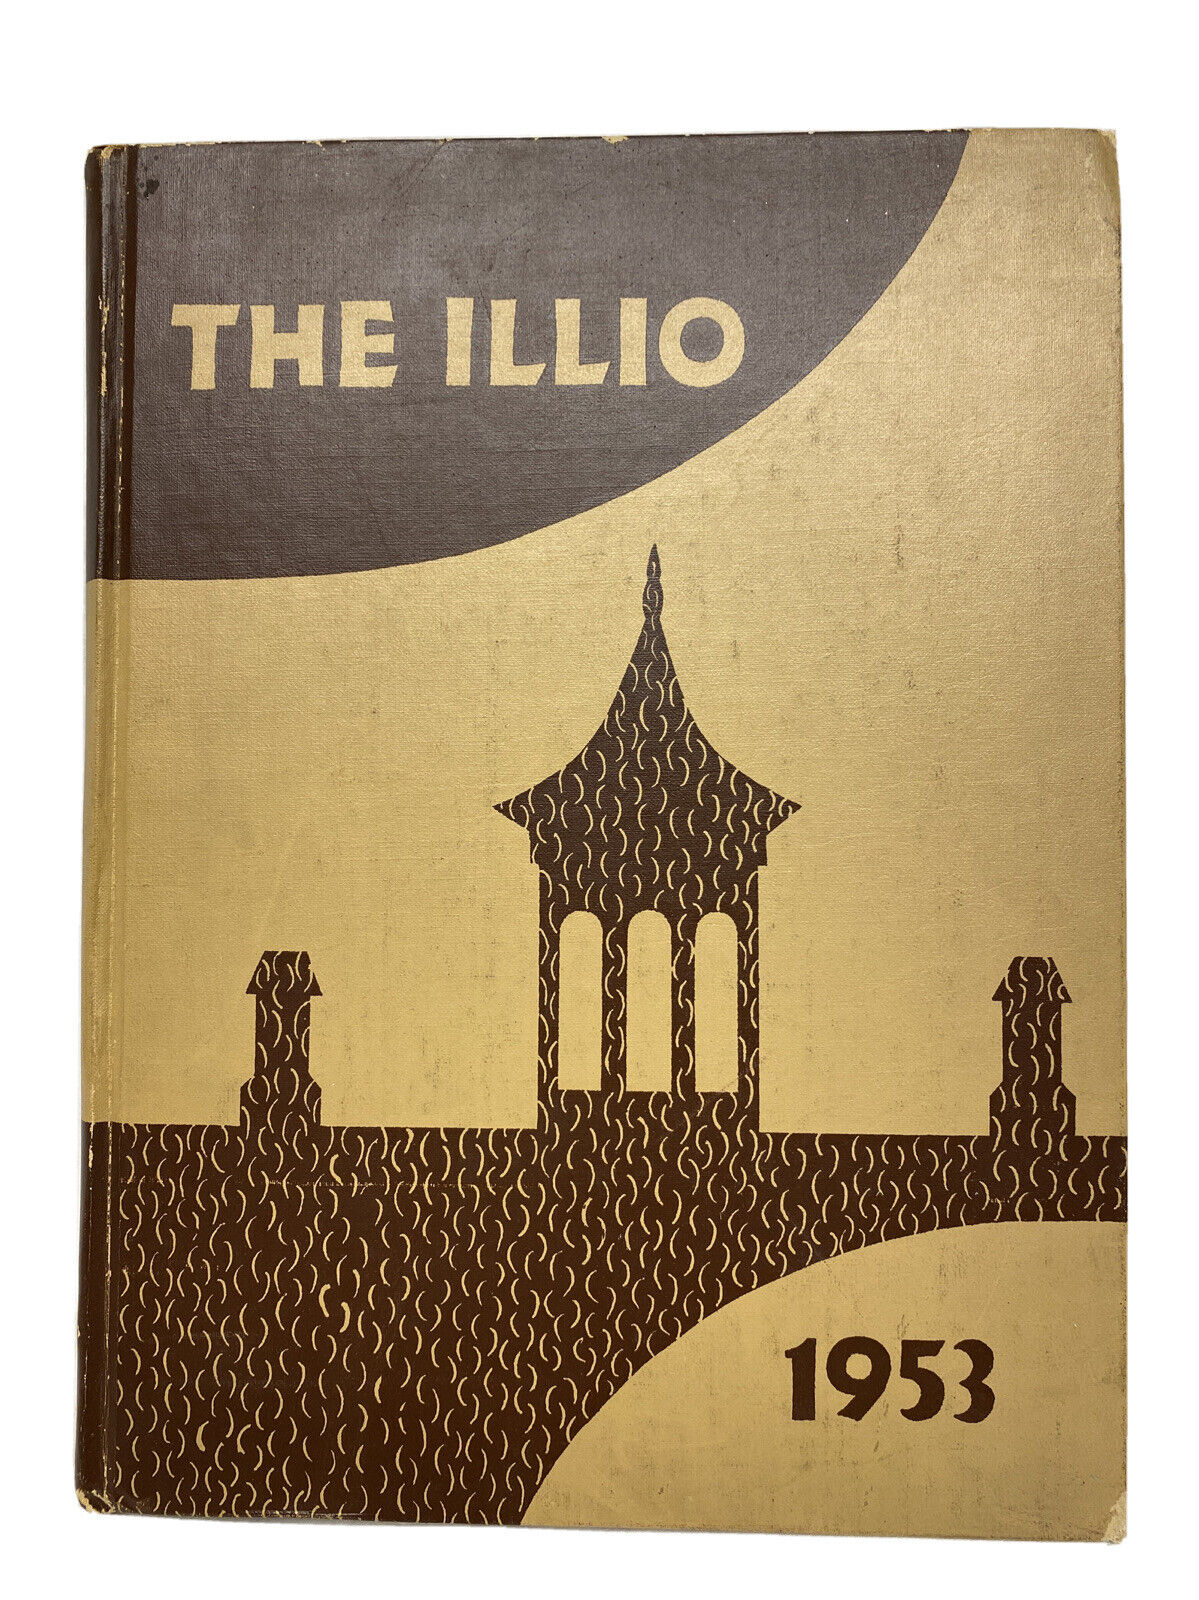 1953 University of Illinois Yearbook The Illio